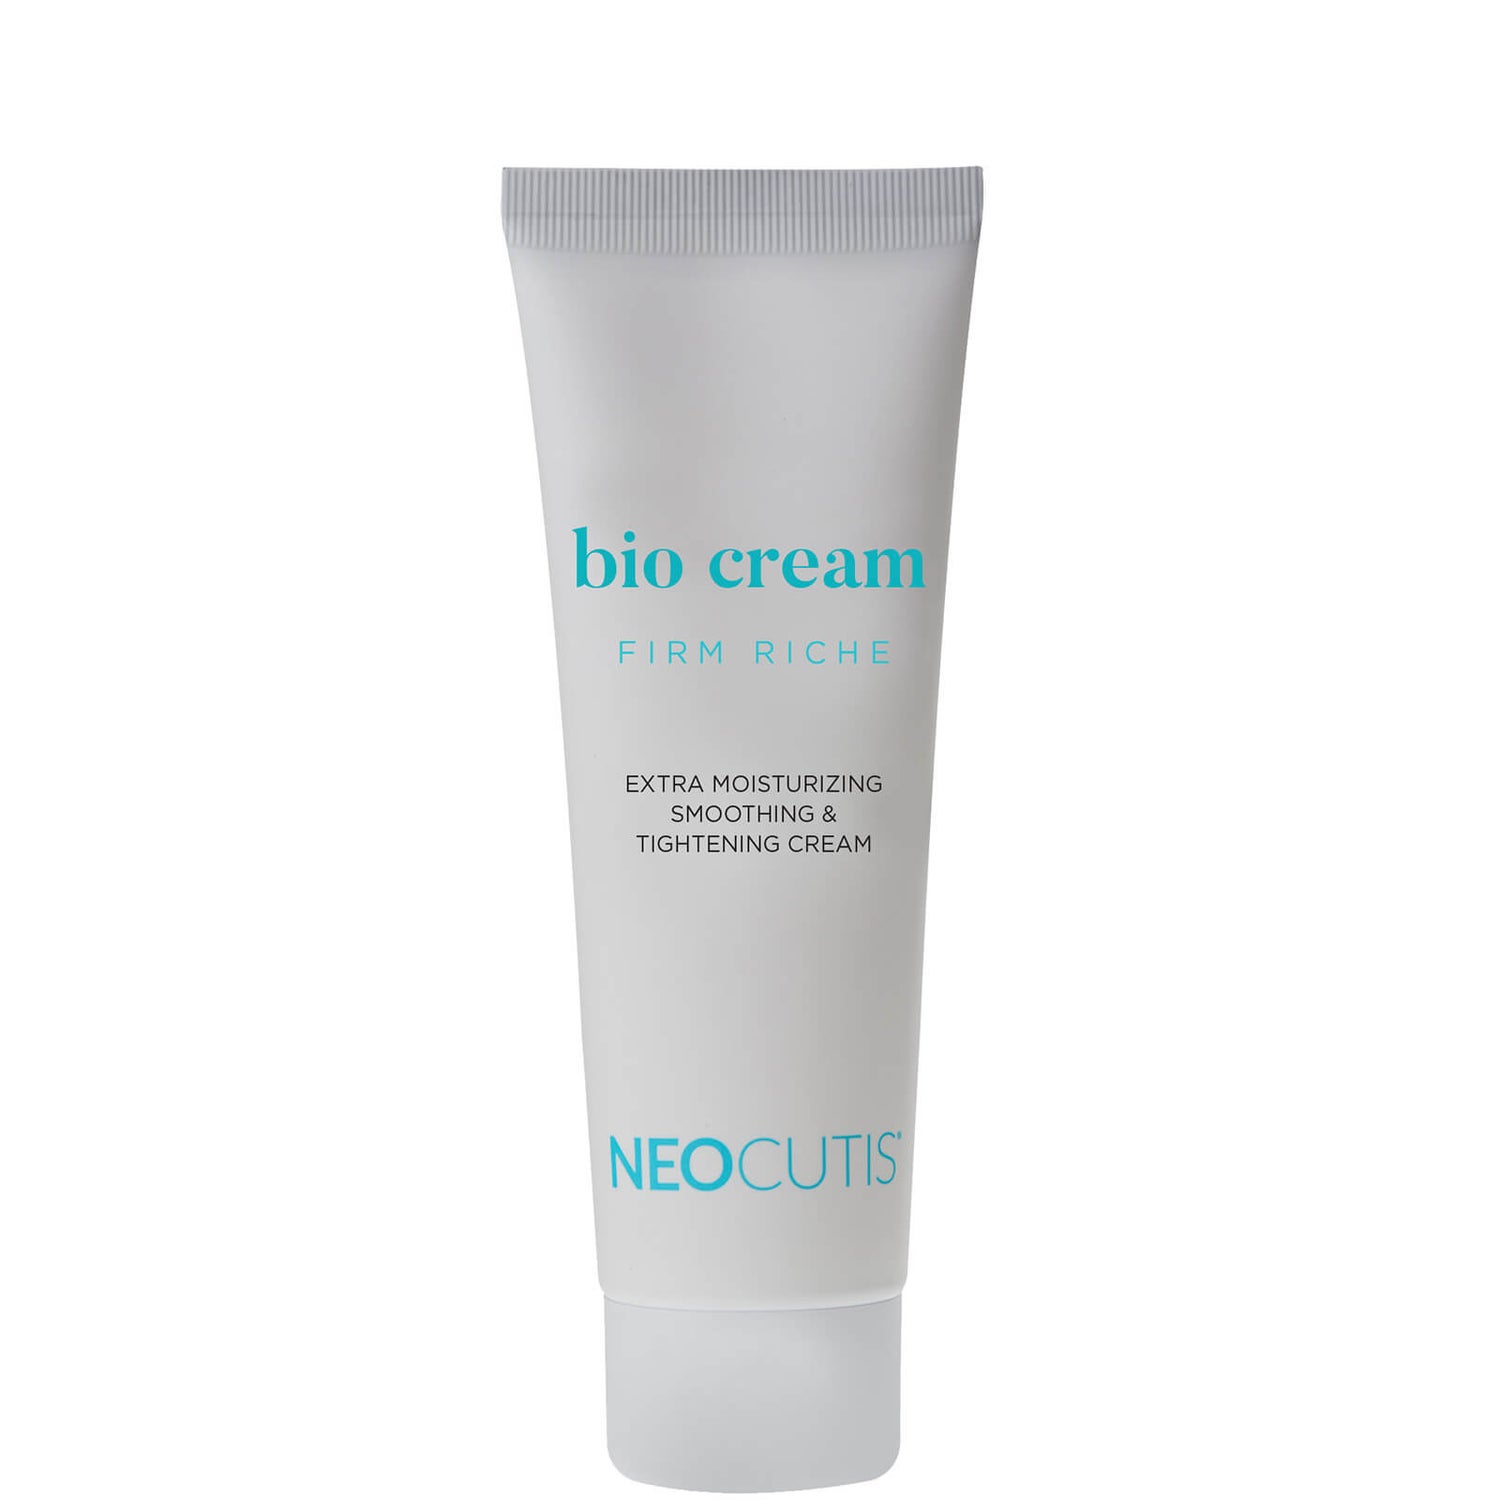 Neocutis Bio Cream Firm Riche 4ml (Worth $21.00)